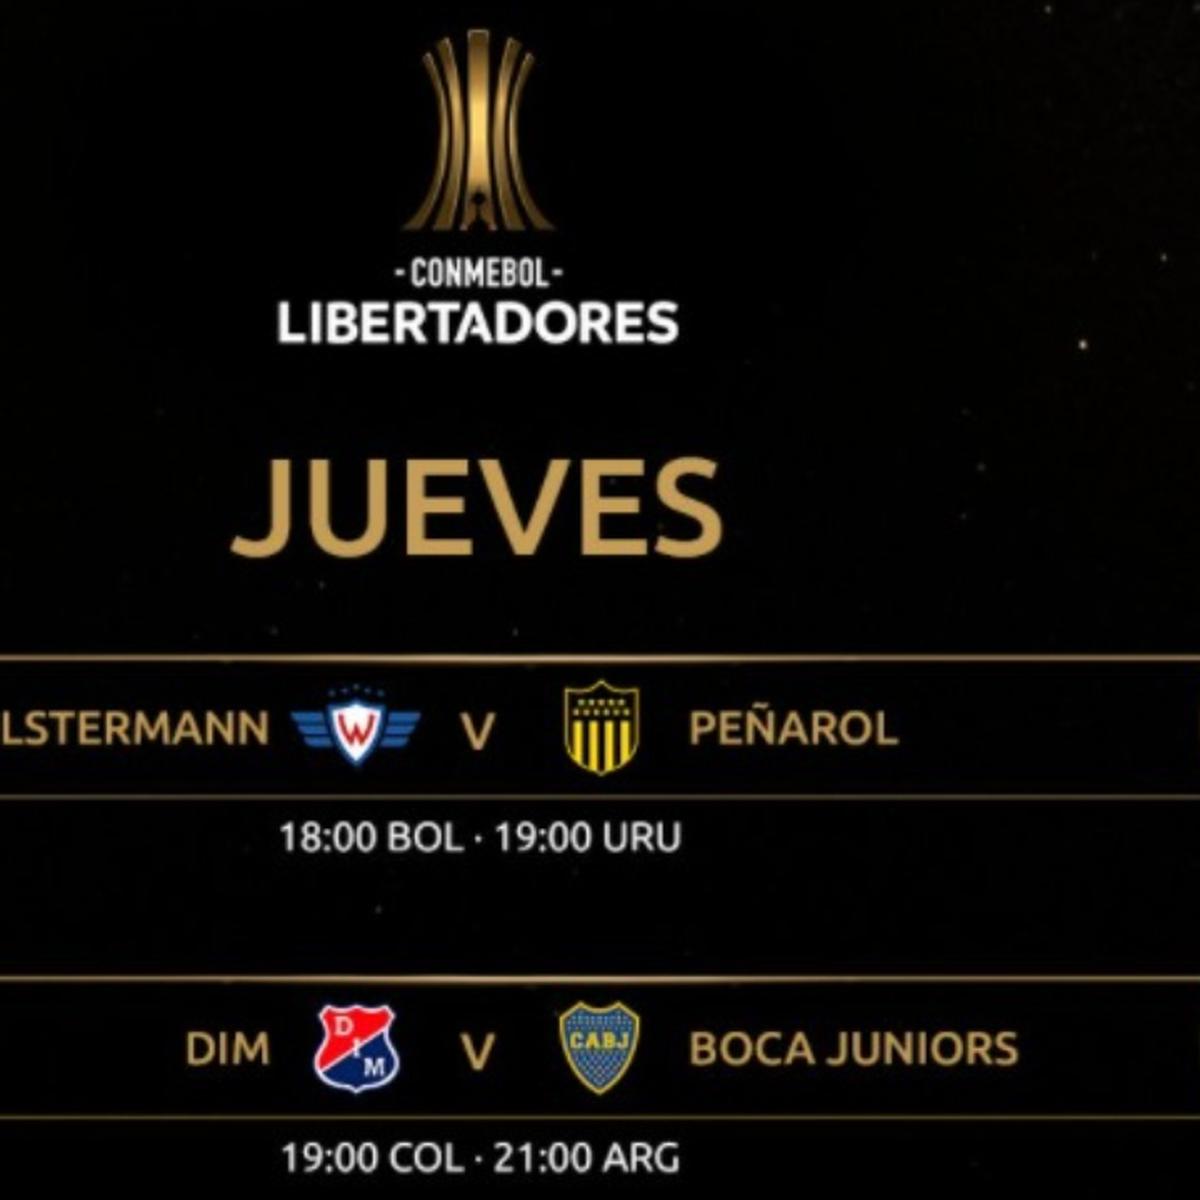 Copa Libertadores 2020 En Vivo Partidos Posiciones Y Tv Oficial Resultados Via Fox Sports En Vivo Y Espn Online Ver Facebook Watch Fb Live Youtube Live Directo